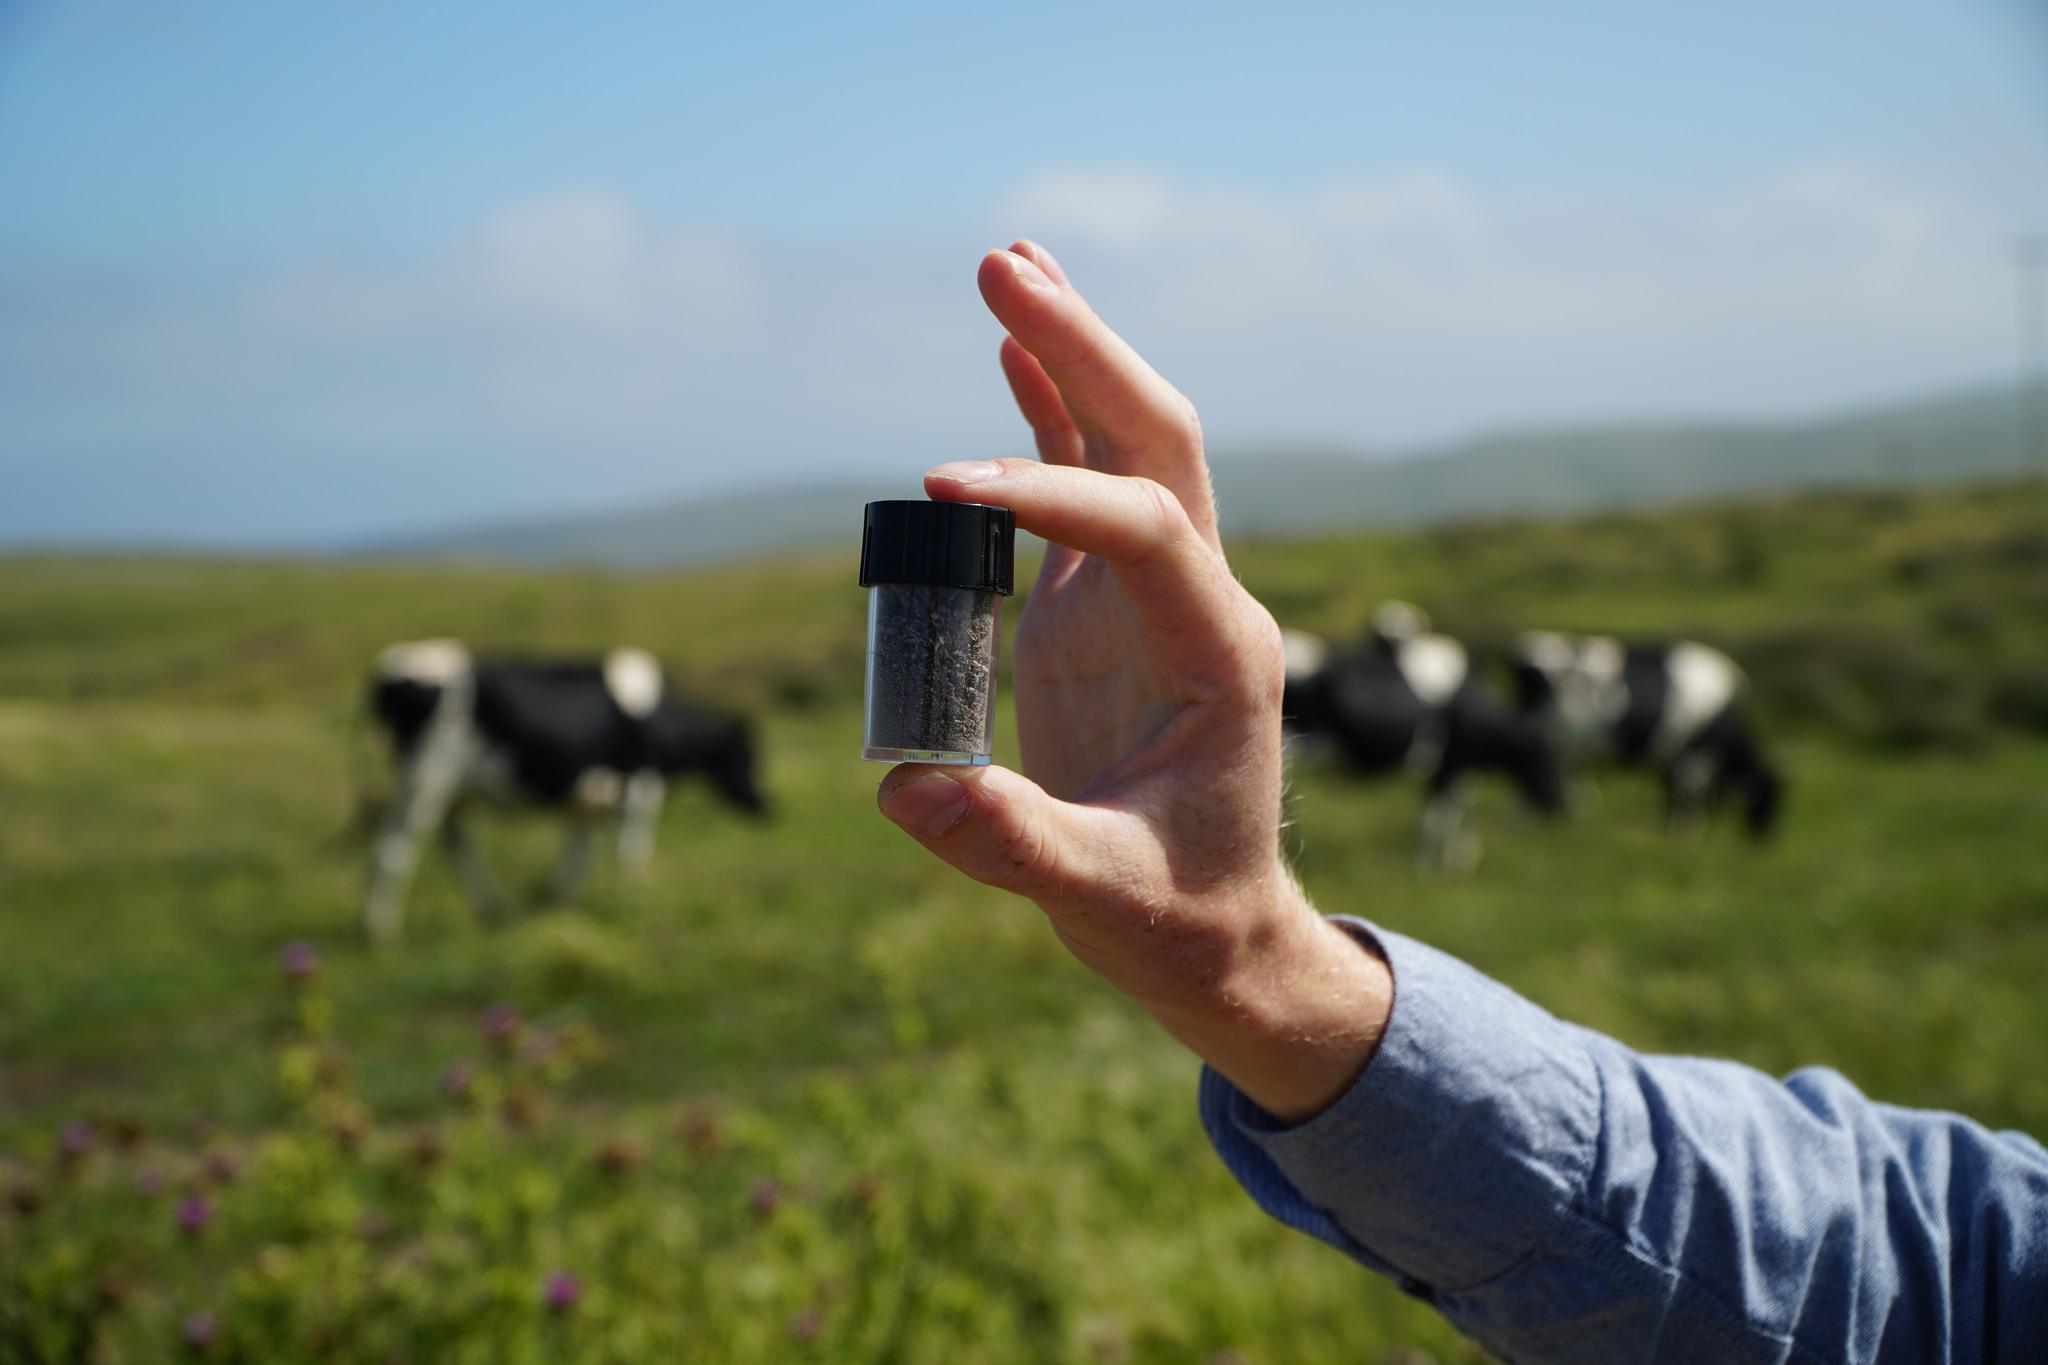 تنتج شركة Volta Greentech مكملاً غذائيًا يعتمد على الأعشاب البحرية مما يجعل الأبقار تنتج الغازات بشكل أقل. الصورة: فولتا جرينتك